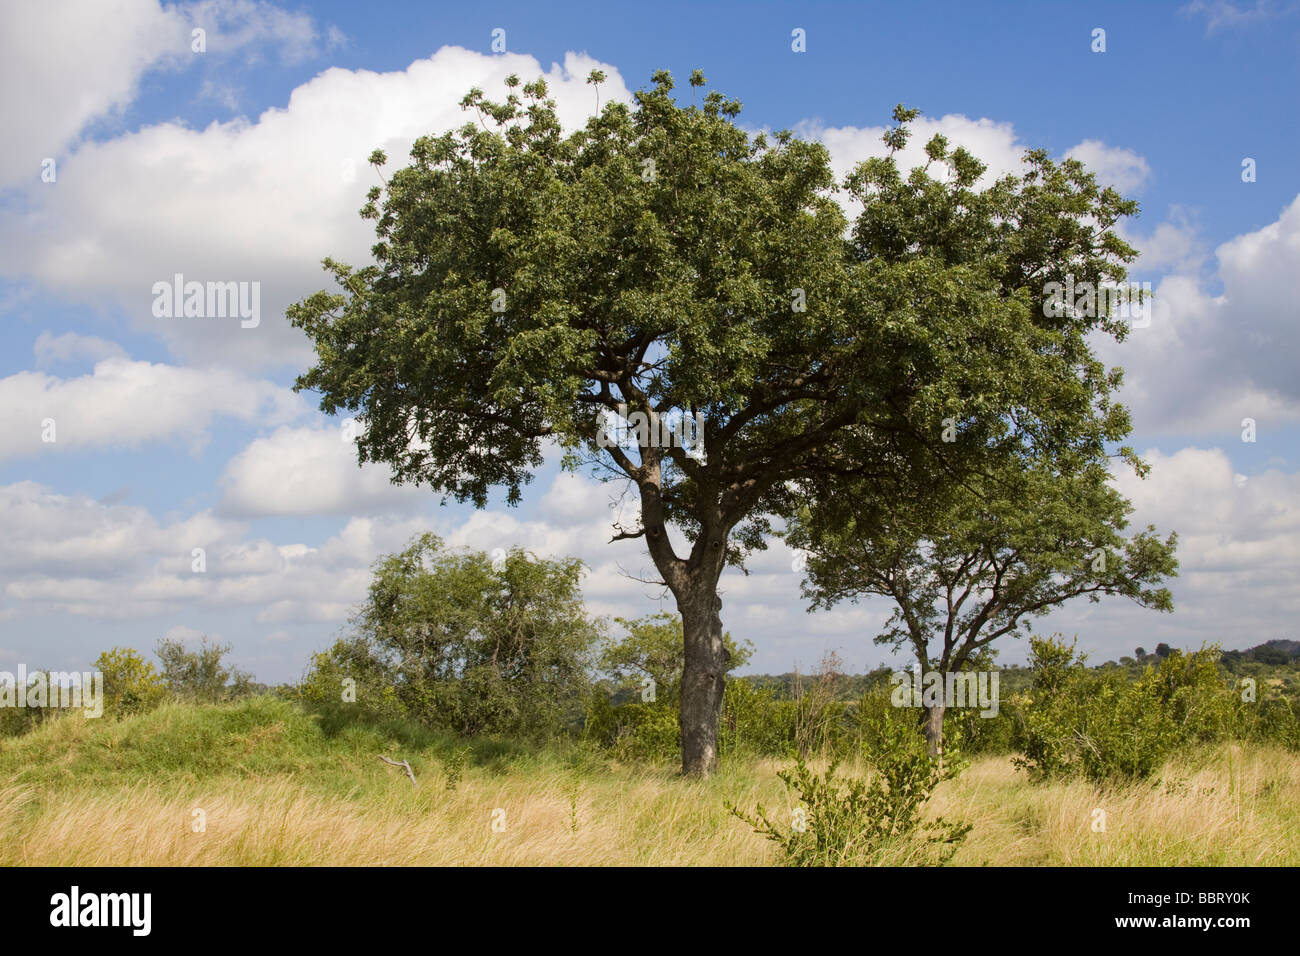 Marula tree immagini e fotografie stock ad alta risoluzione - Alamy